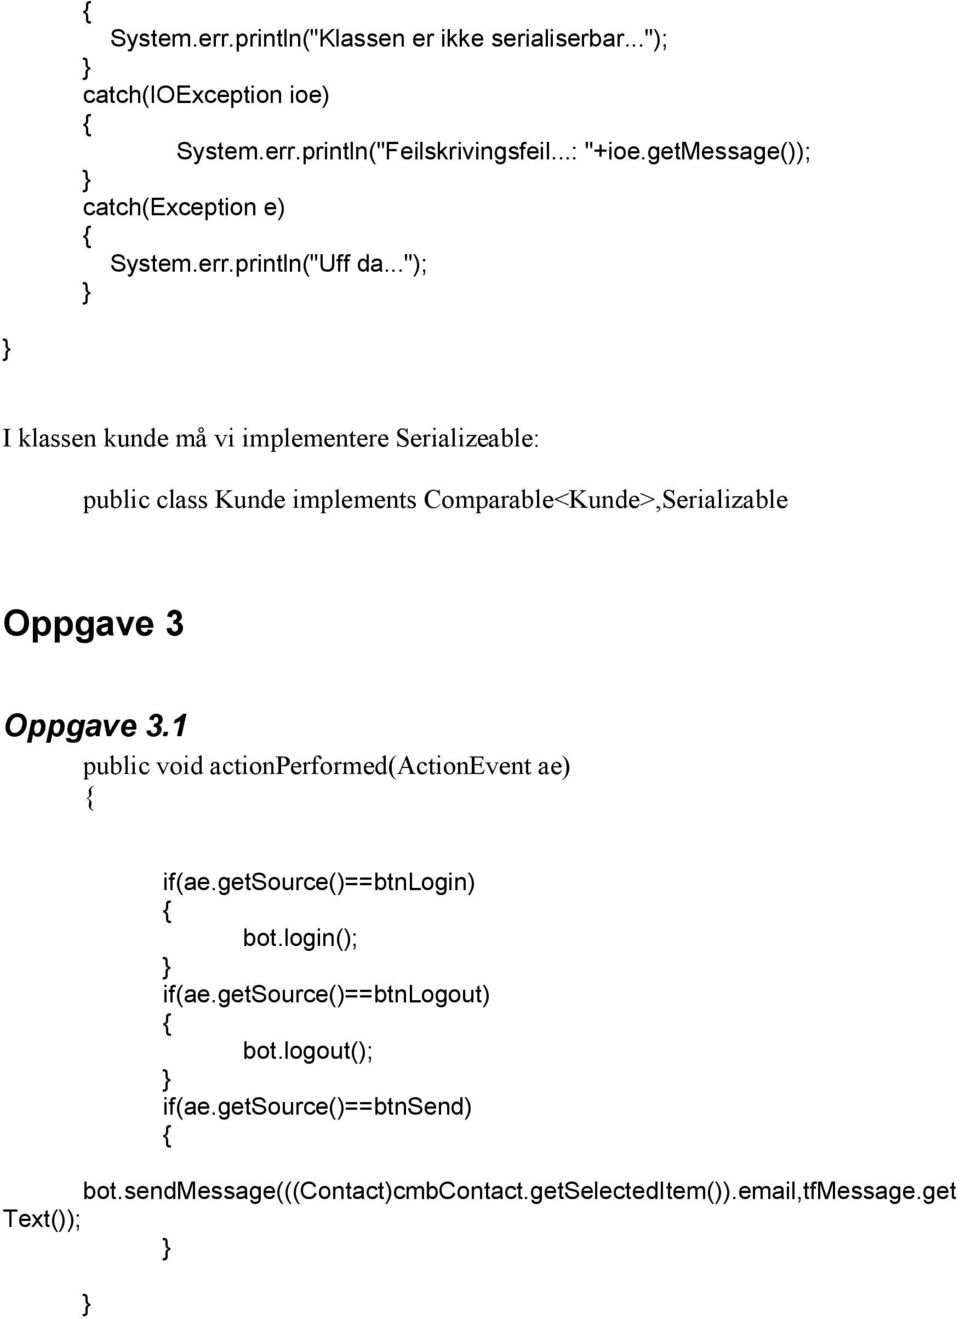 .."); I klassen kunde må vi implementere Serializeable: public class Kunde implements Comparable<Kunde>,Serializable Oppgave 3 Oppgave 3.